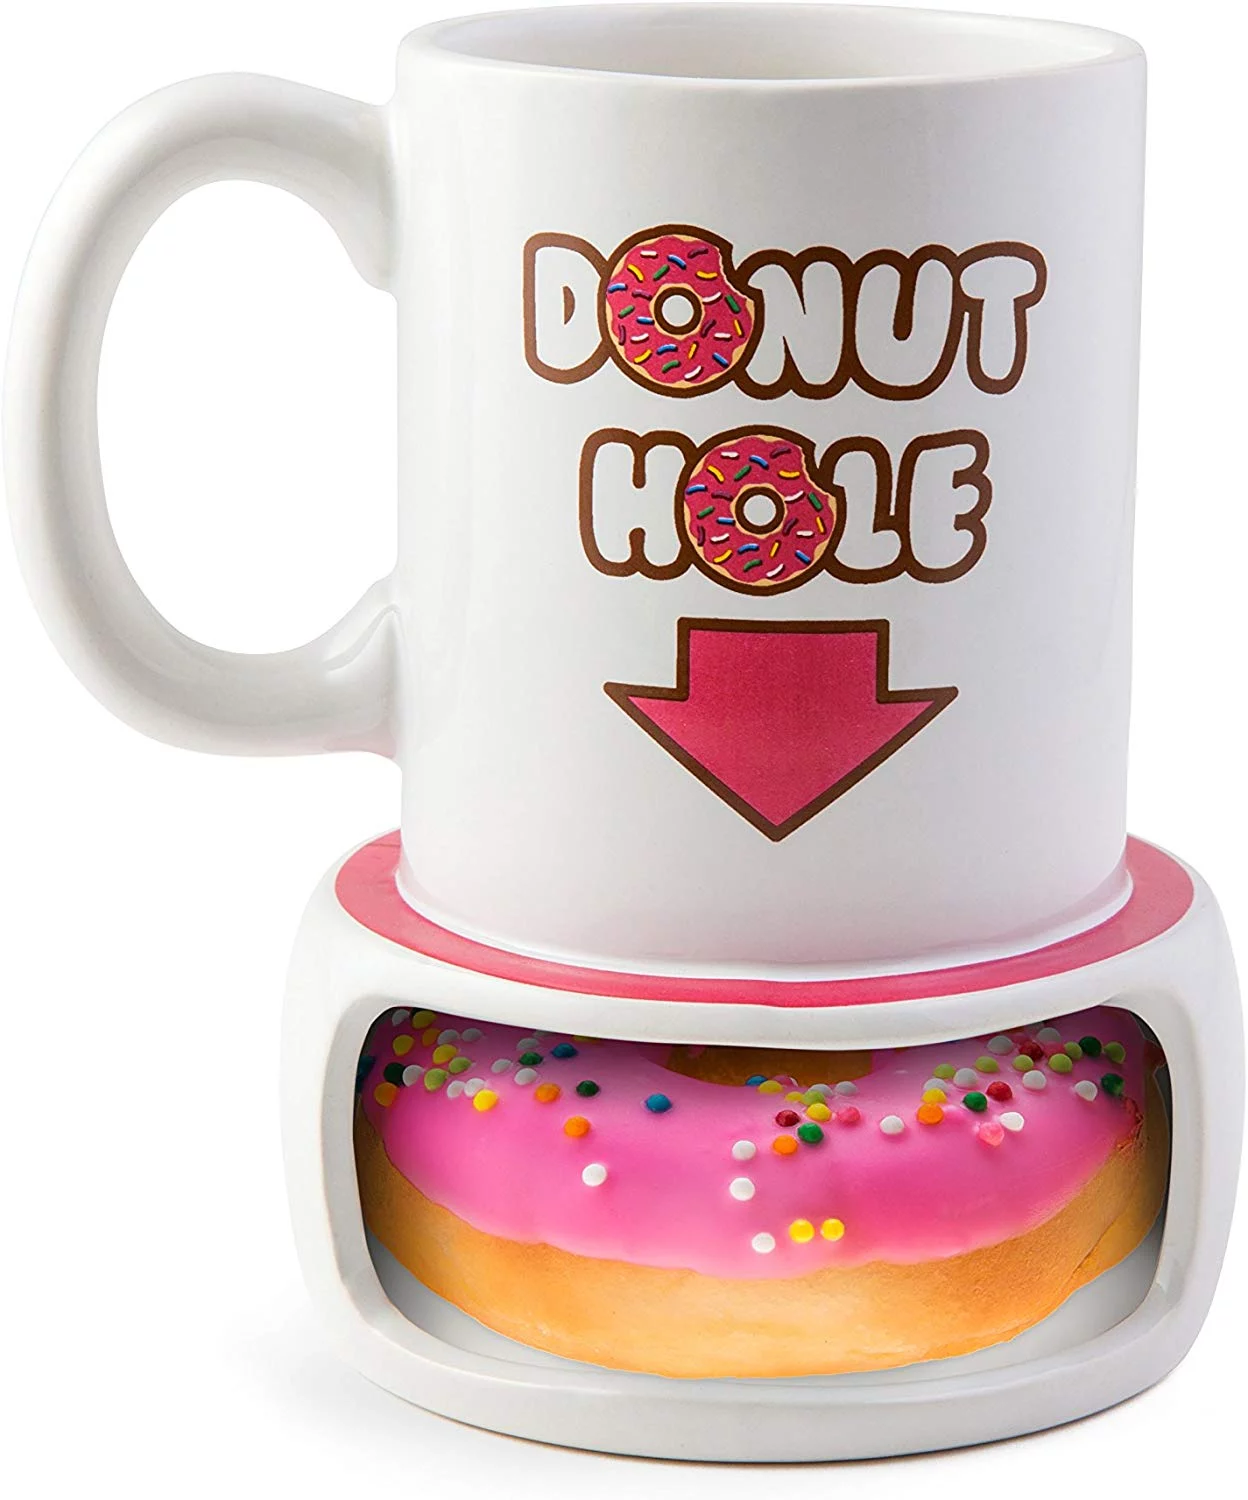 Funny Gag Gifts 2020: Donut Hole Mug 2020